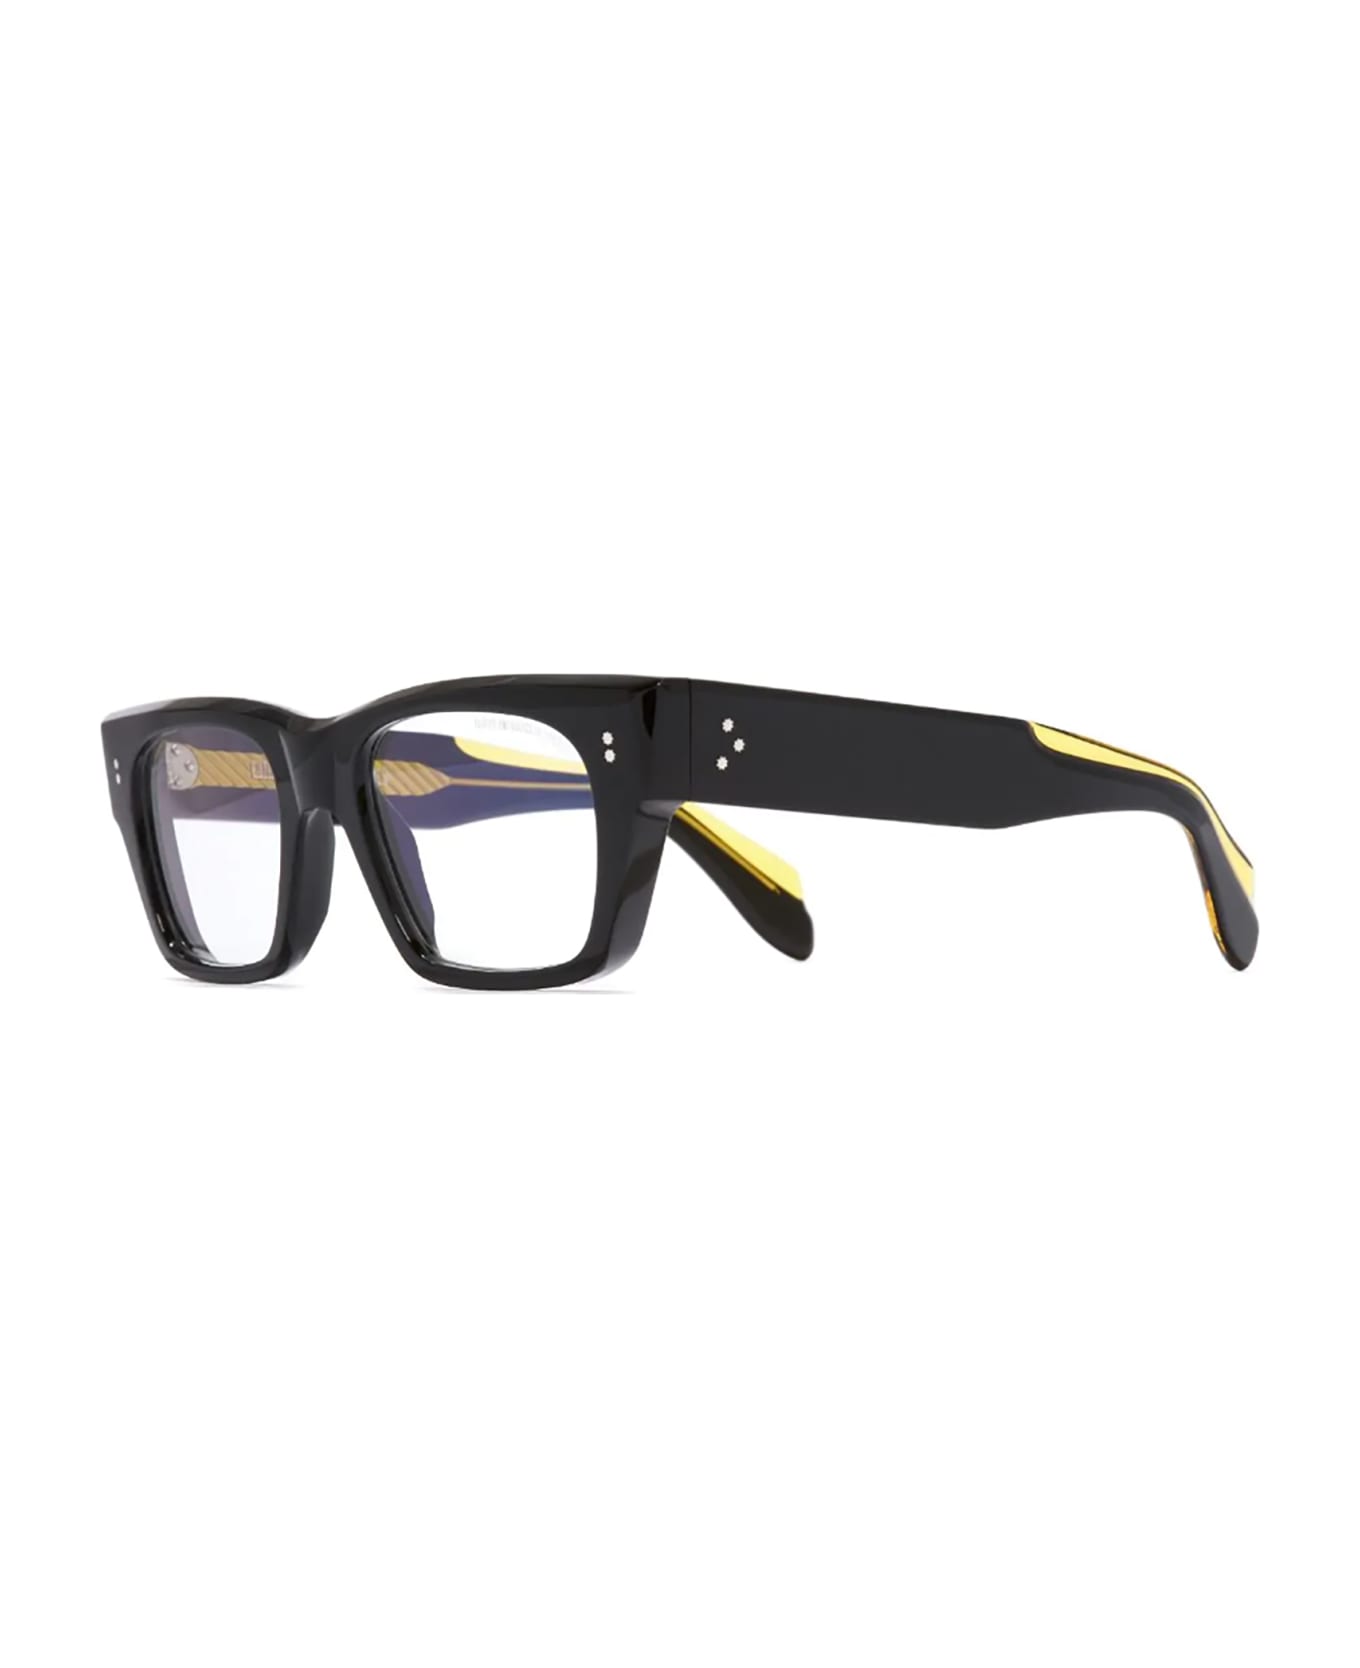 Cutler and Gross 9690 Eyewear - Black (sun)